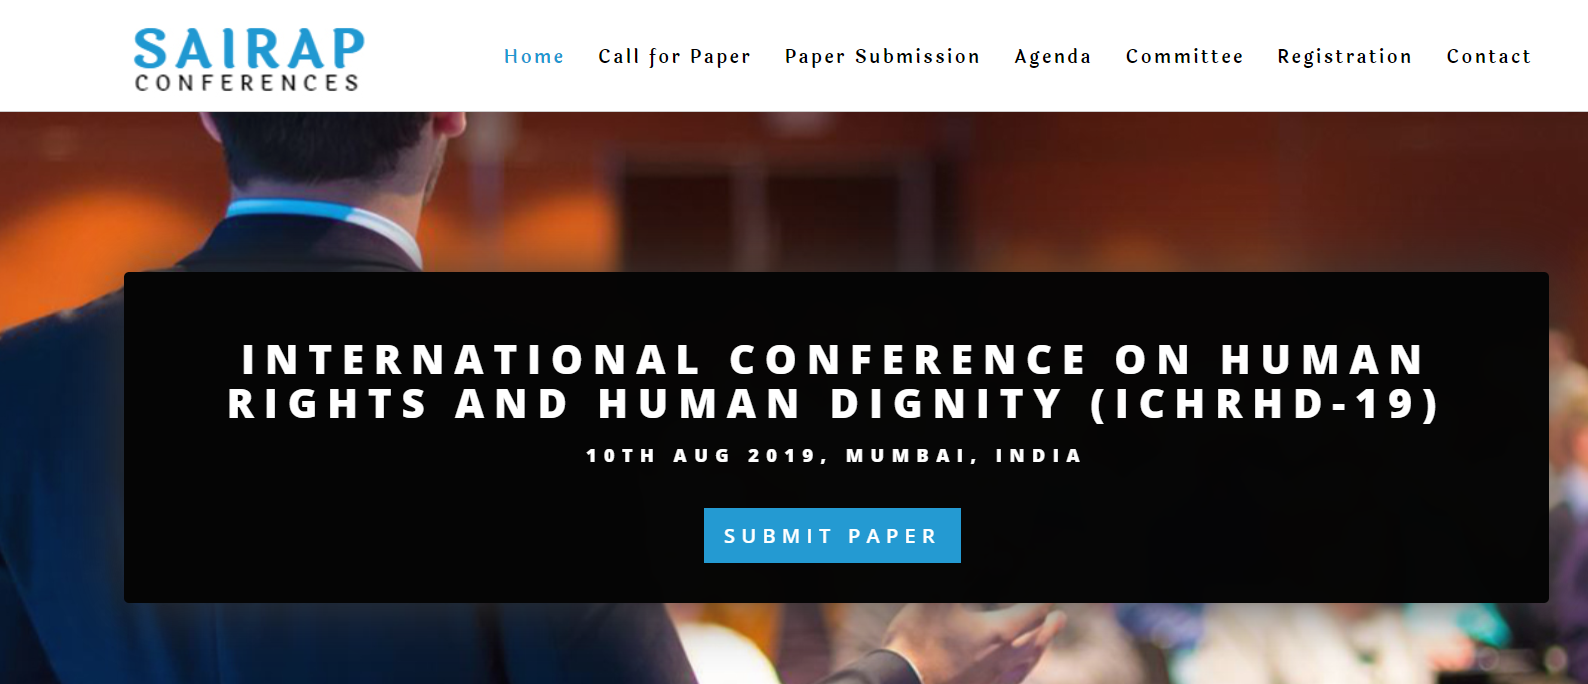 INTERNATIONAL CONFERENCE ON HUMAN RIGHTS AND HUMAN DIGNITY (ICHRHD-19), Mumbai, Maharashtra, India